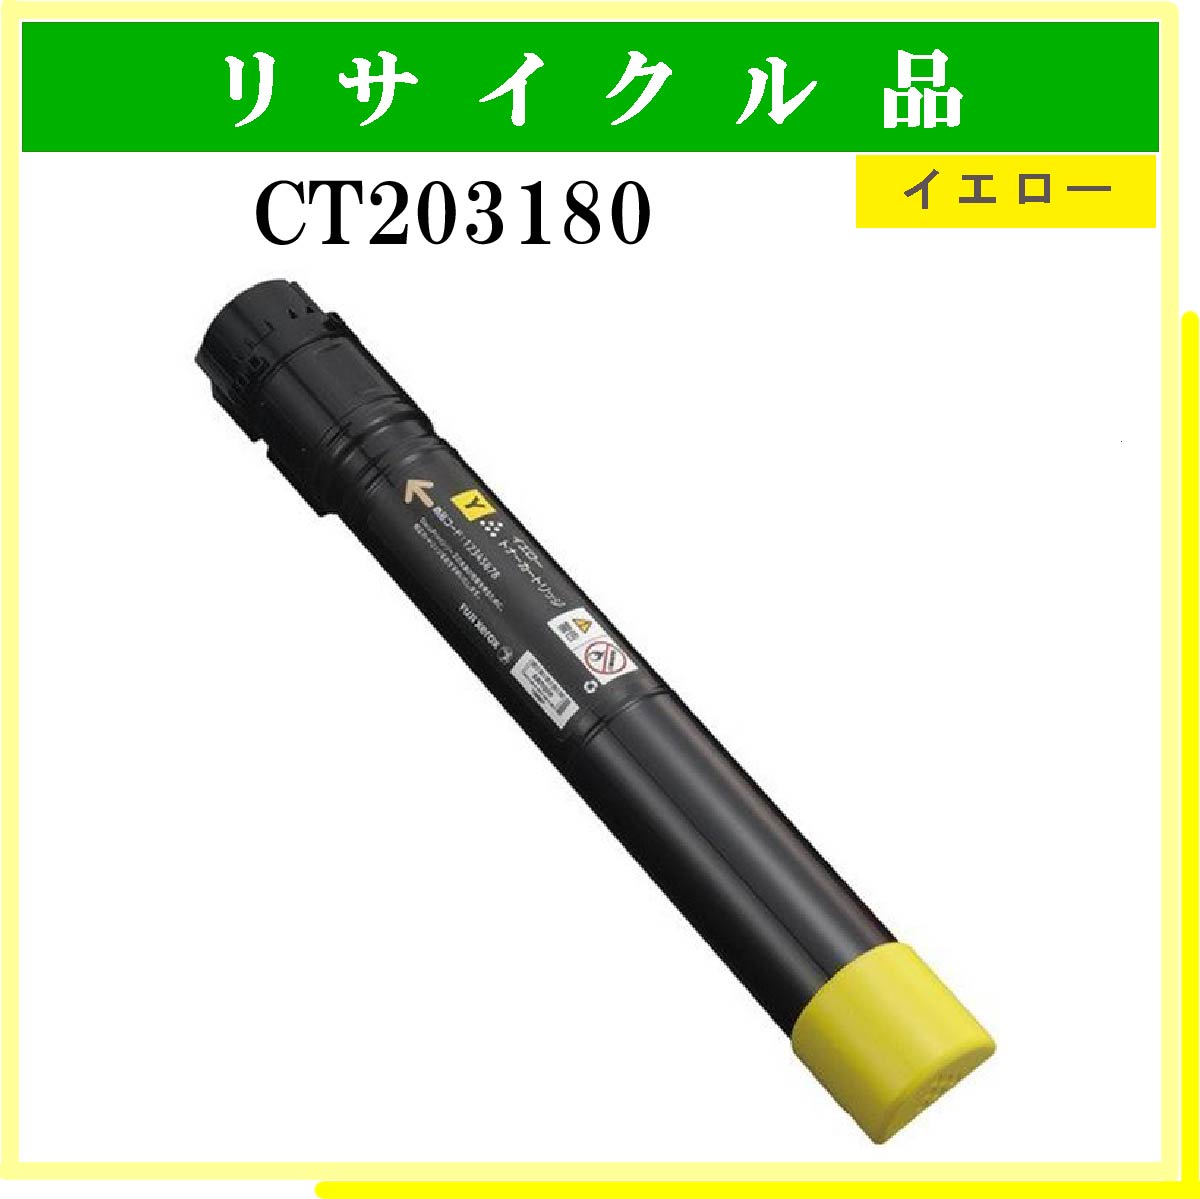 CT203180